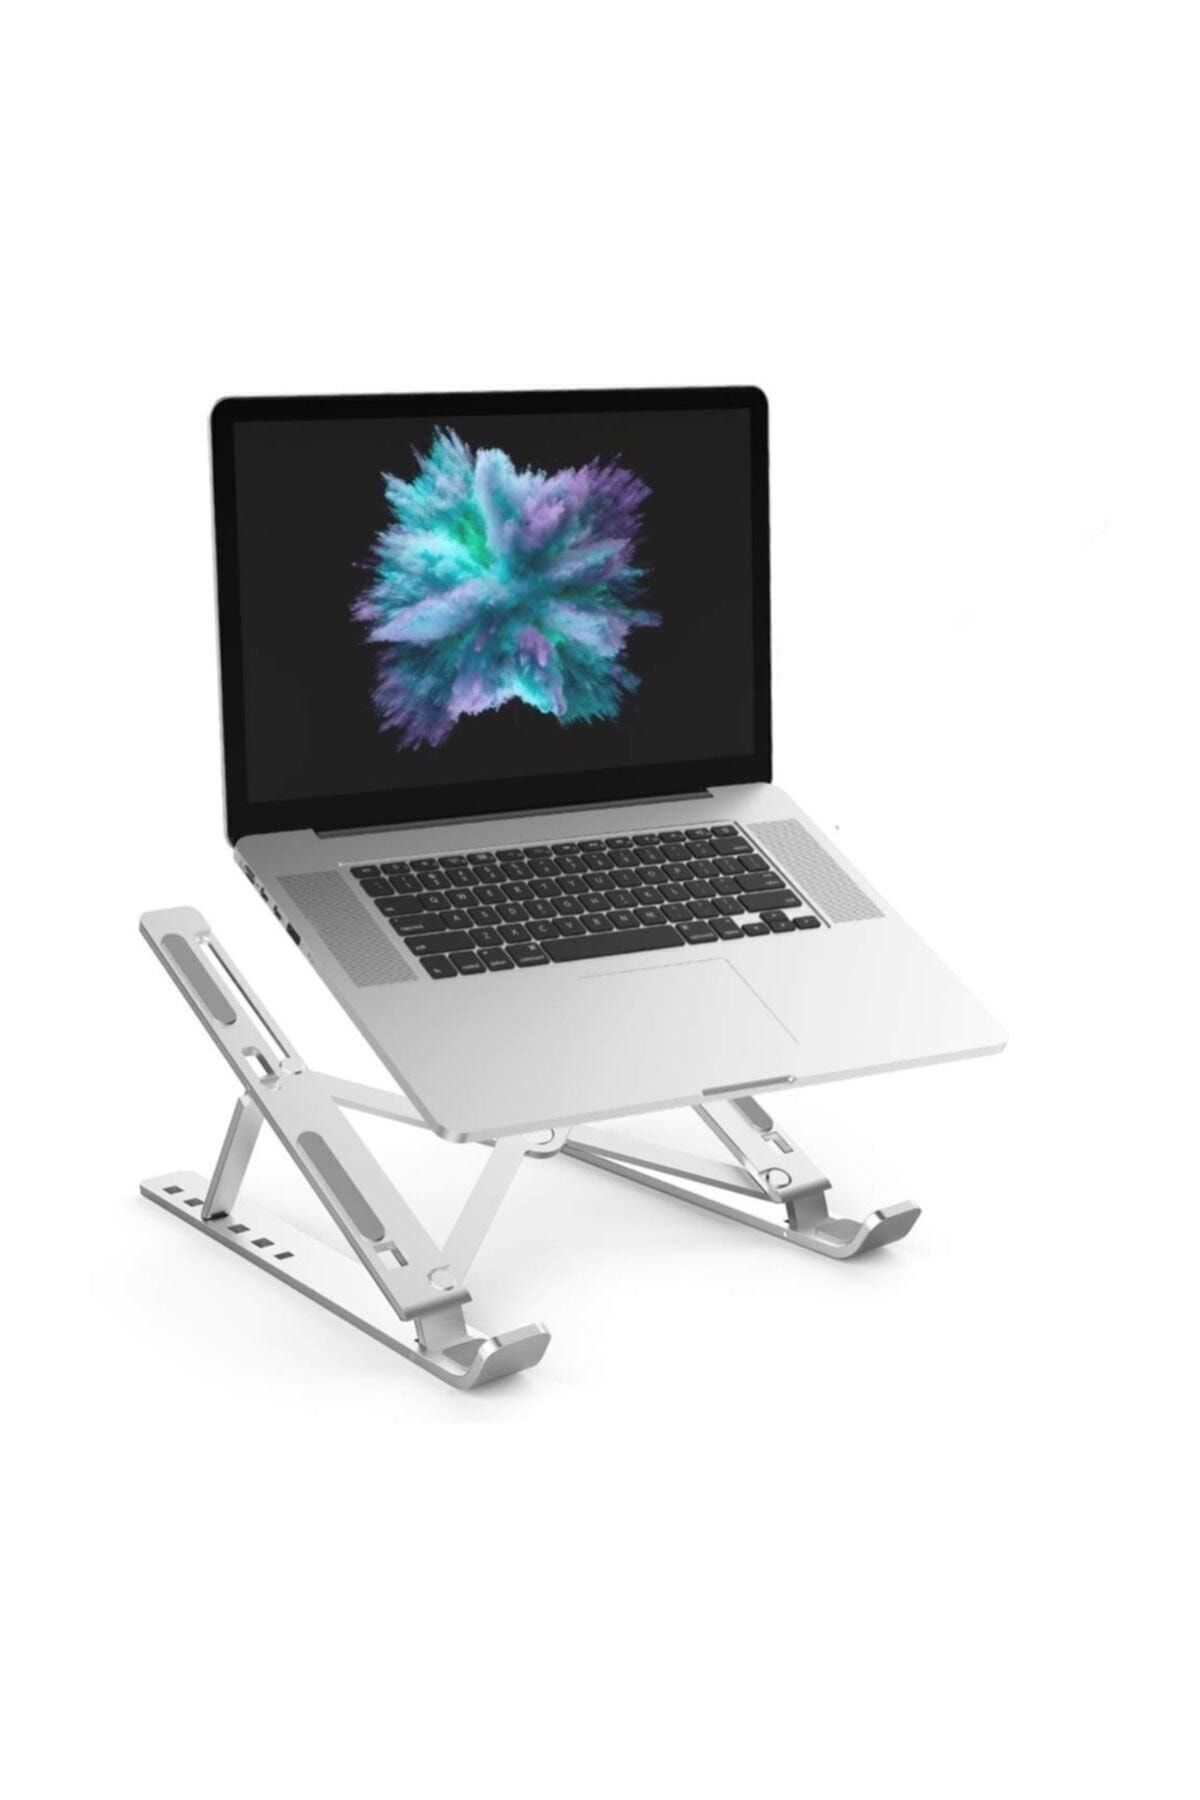 teknosepetim Macbook Laptop Bilgisayar Standı Notebook Özel Yükseltici Stand Tablet Tutucu Ayarlı Metal